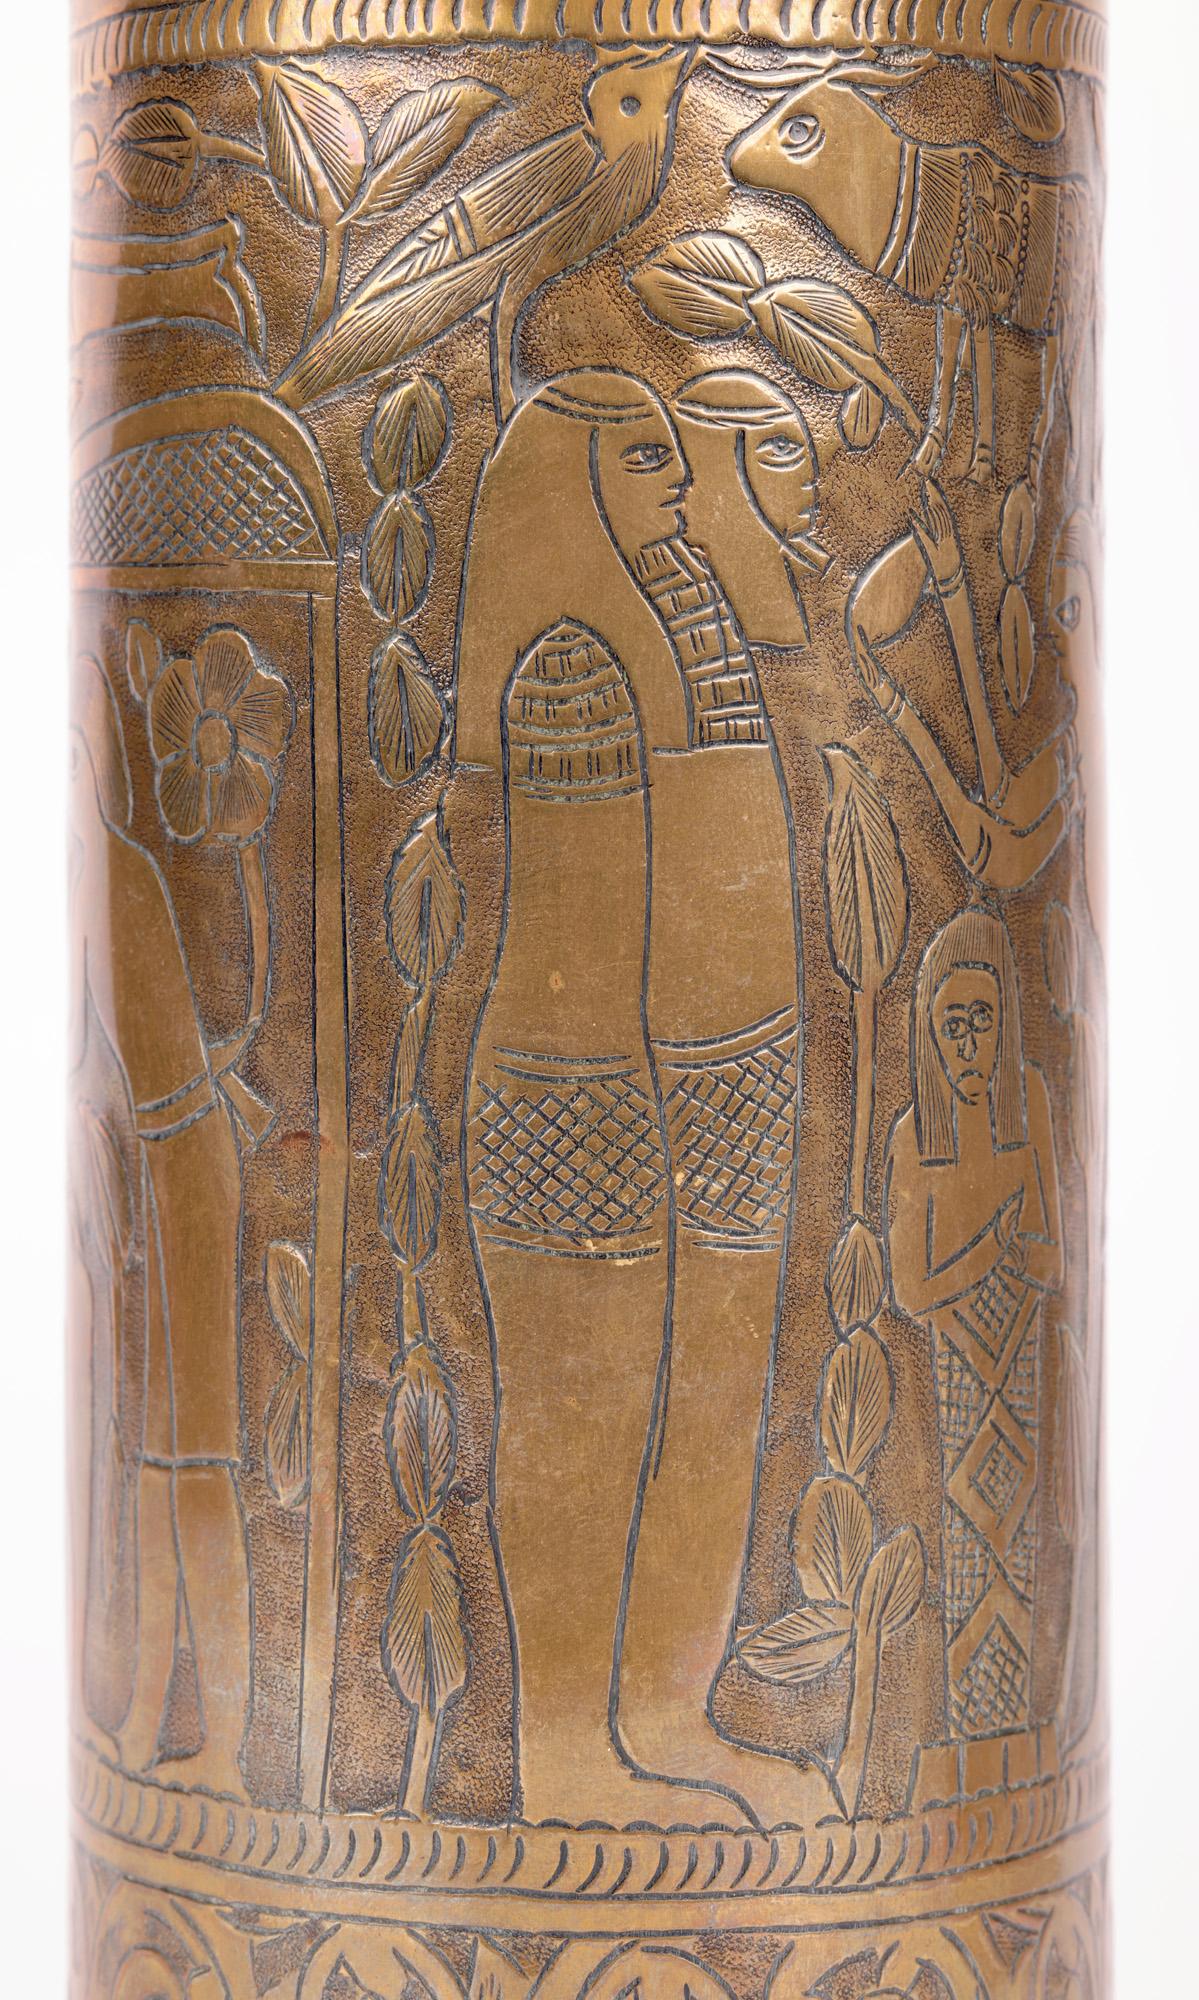 Eine außergewöhnliche und gut graviert WWI Messing-Gehäuse mit und ägyptischen Stil Szene unter Skript aus etwa 1915 gesetzt. Die große und schwer gearbeitete Muschelschale ist von hoher zylindrischer Form mit ihrem dicken originalen abgerundeten